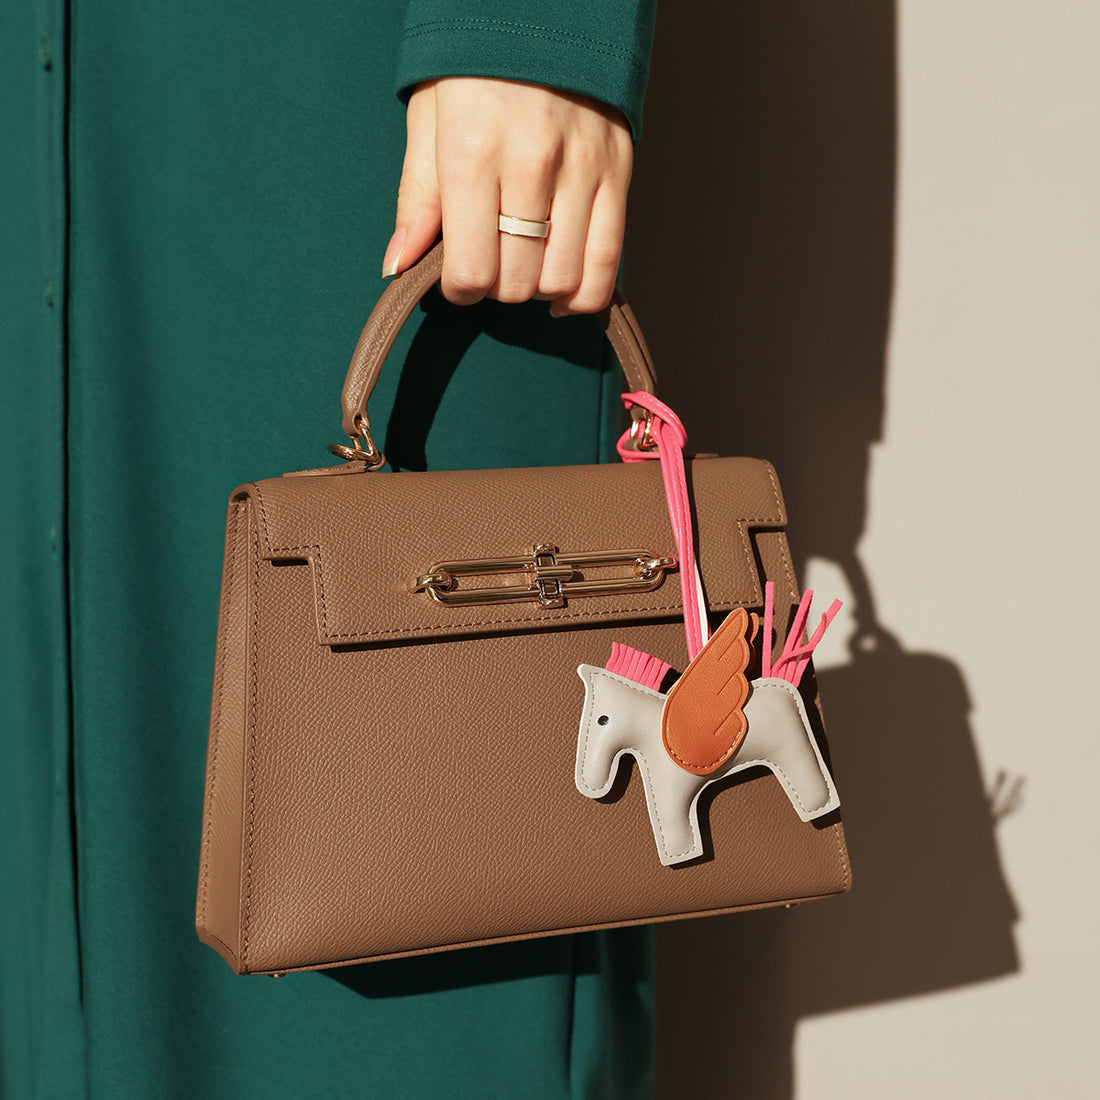 classic-handbag-with-a-unicorn-bag-charm_brown_1.jpg